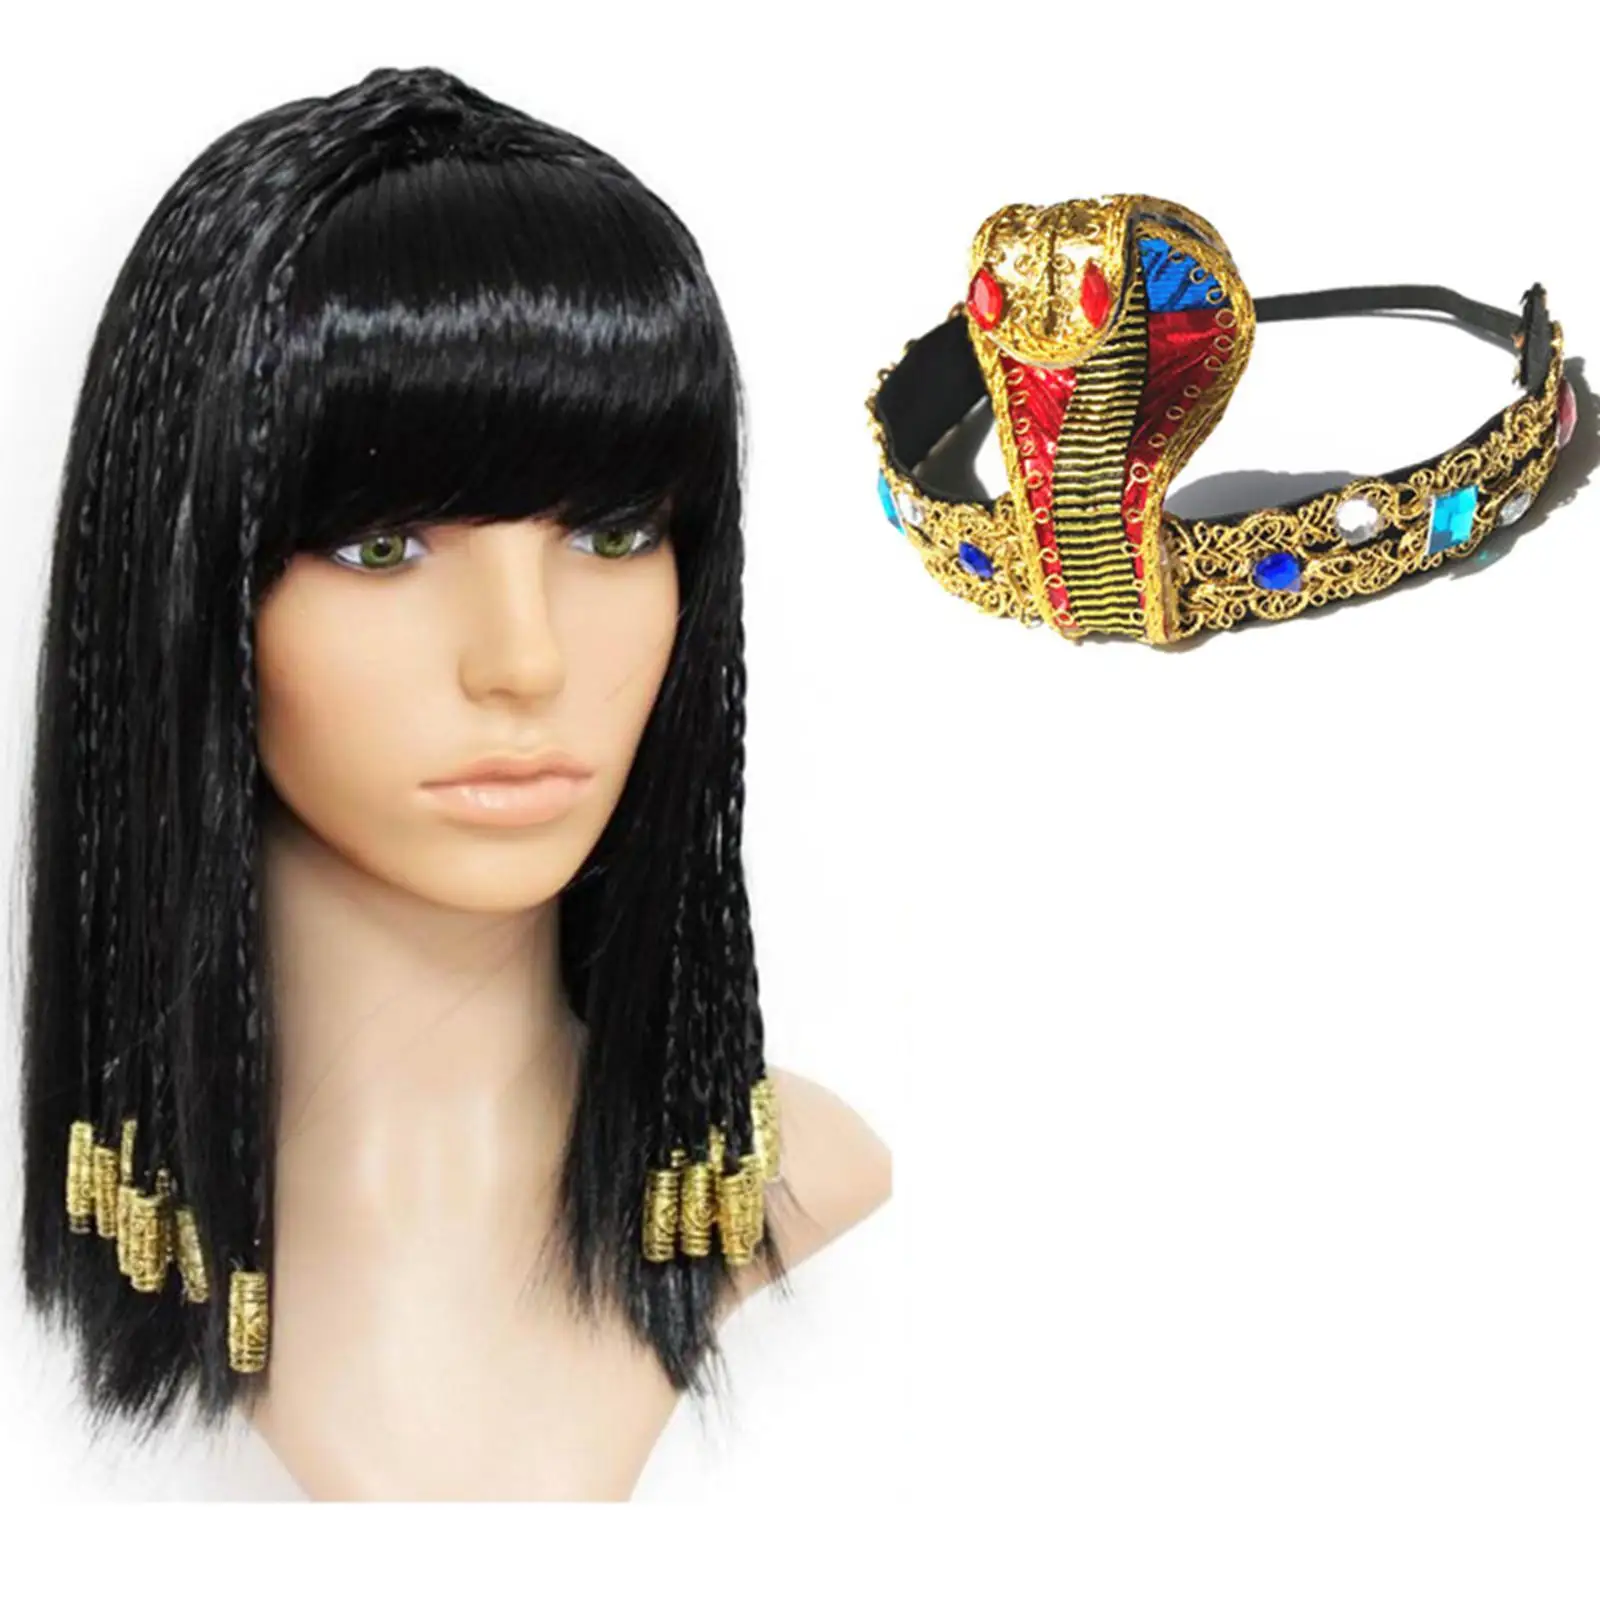 Novely Egypt Queen Headdress Crown Stylish Egyptian Theme Costume Snake Headband for Party Props Wedding Festival Women Girls